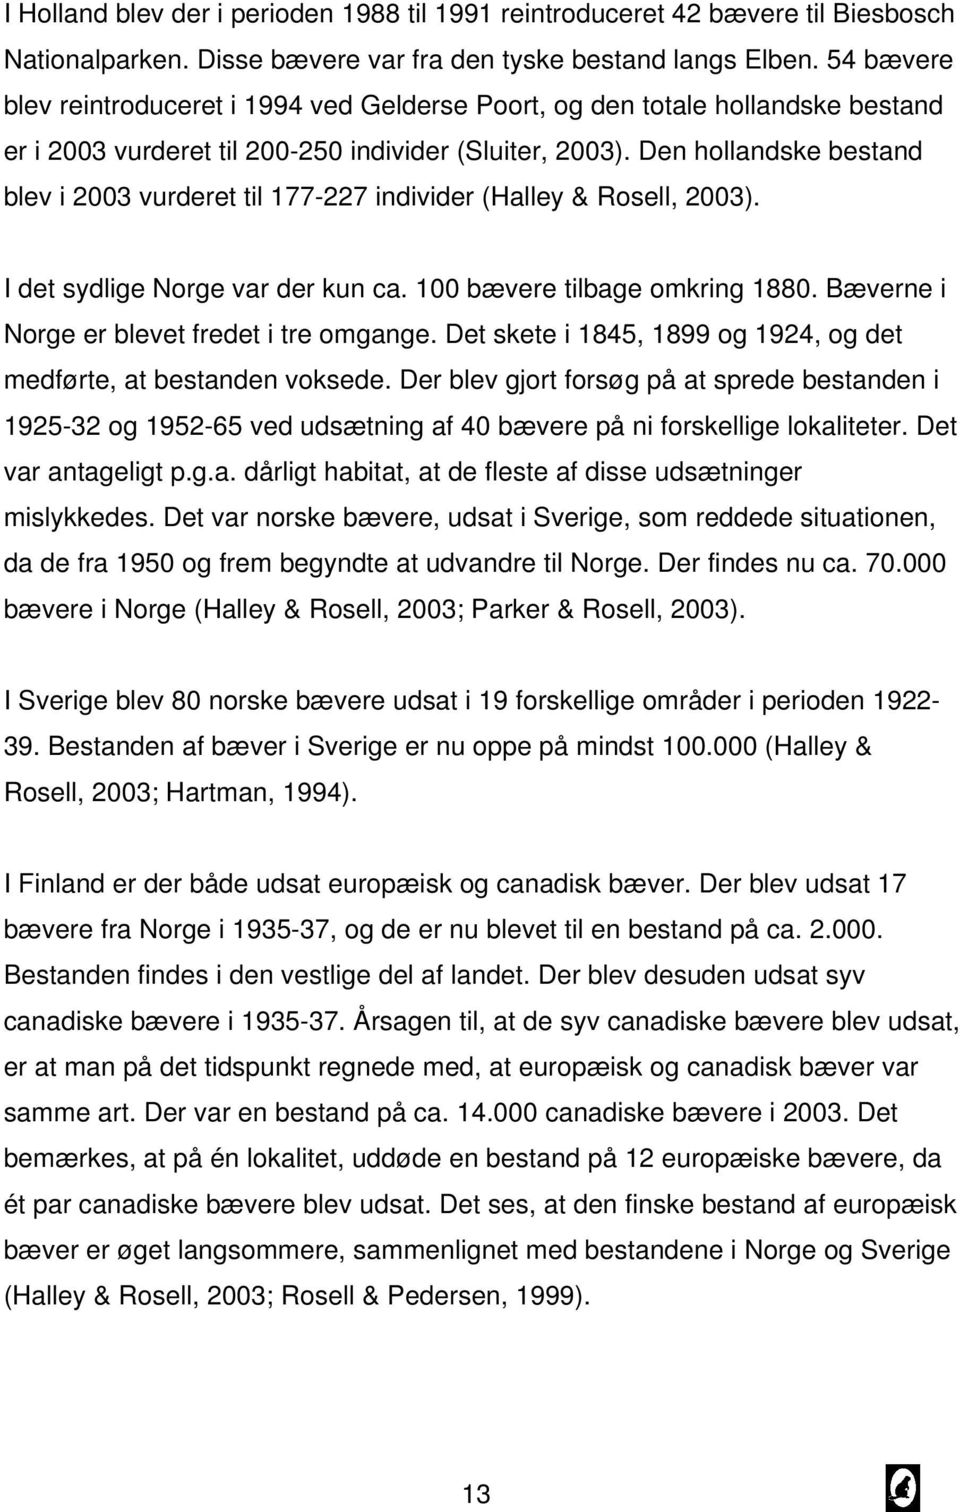 Den hollandske bestand blev i 2003 vurderet til 177-227 individer (Halley & Rosell, 2003). I det sydlige Norge var der kun ca. 100 bævere tilbage omkring 1880.